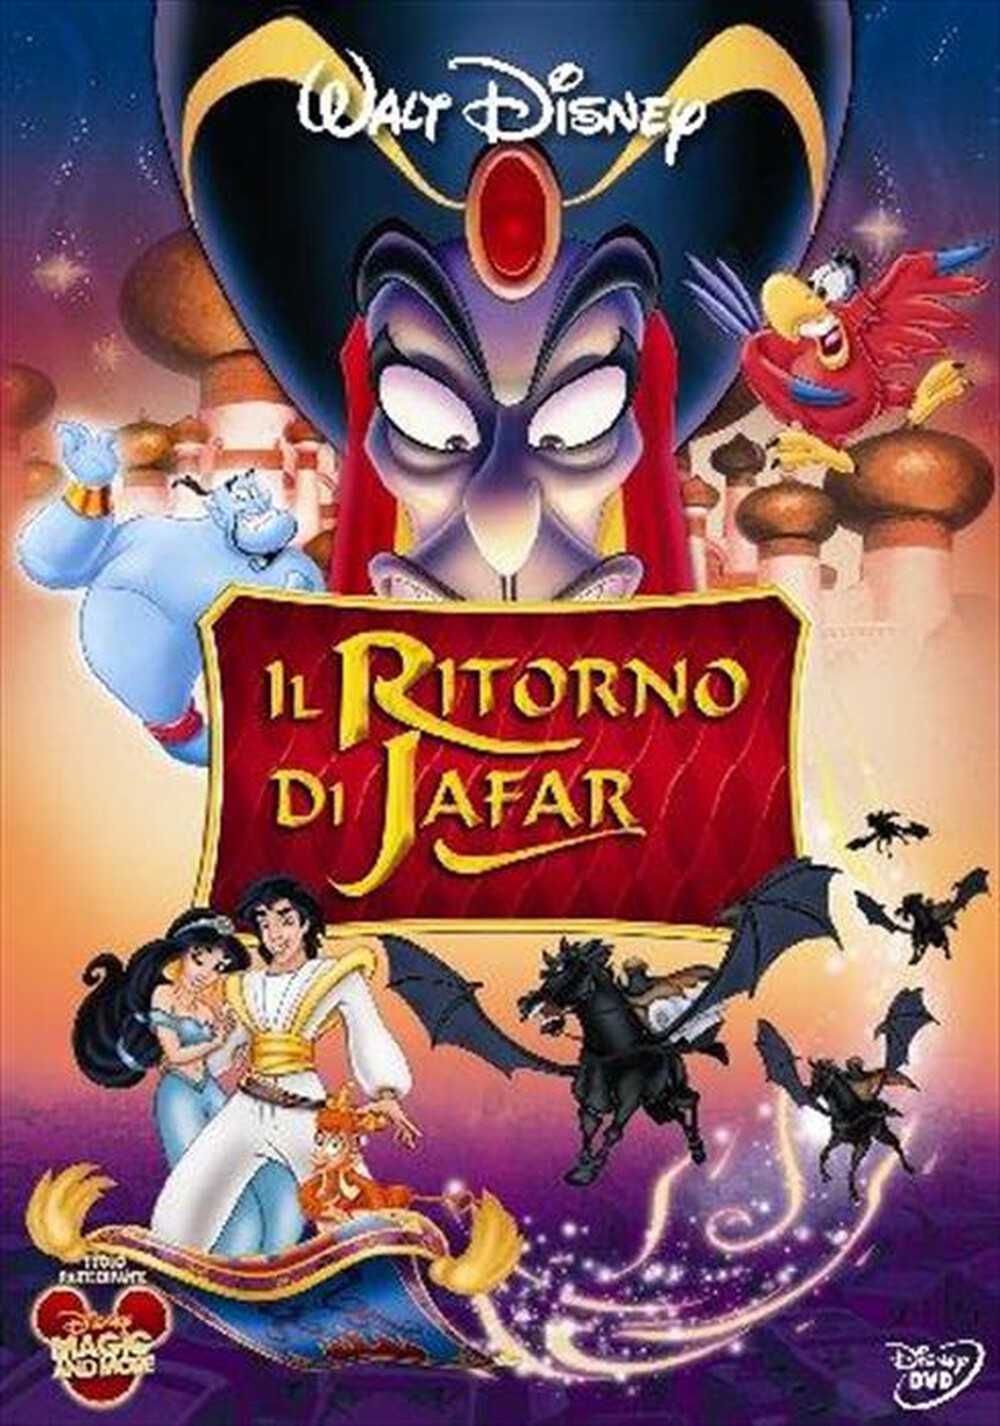 "WALT DISNEY - Ritorno Di Jafar (Il) - "